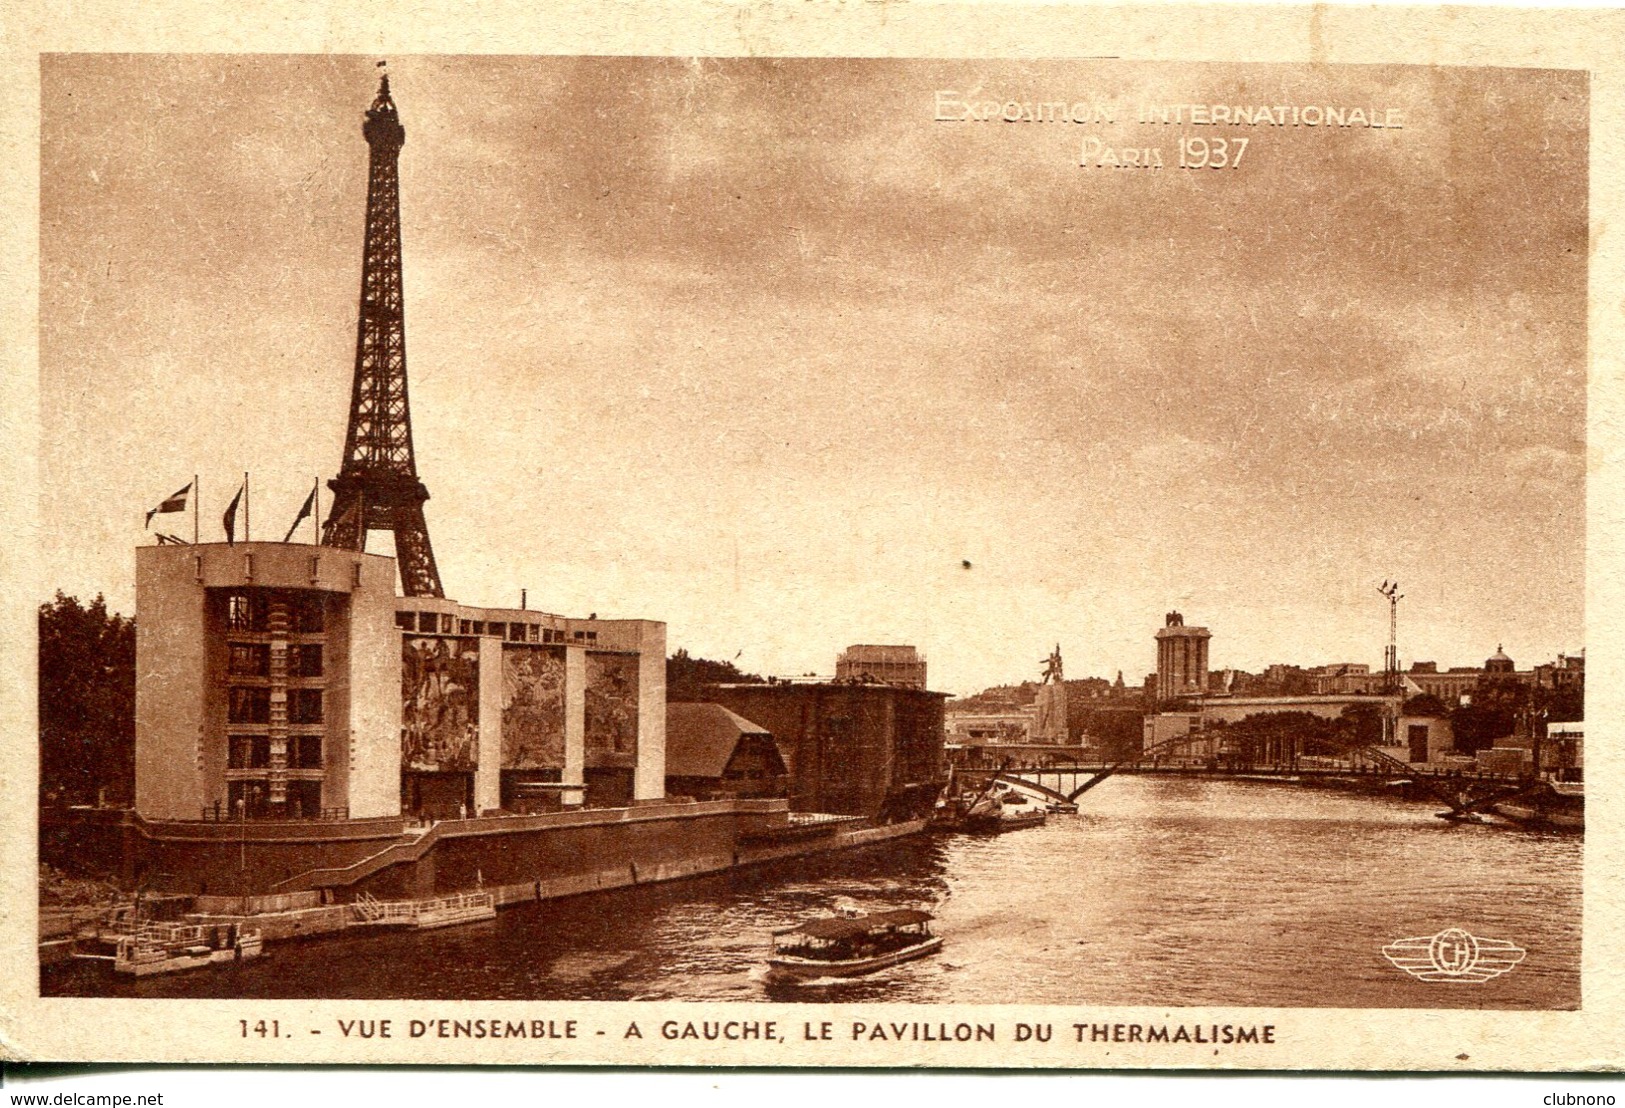 CPA - PARIS - EXPO INT. 1937 - VUE D'ENSEMBLE - PAVILLON DU THERMALISME - Exhibitions